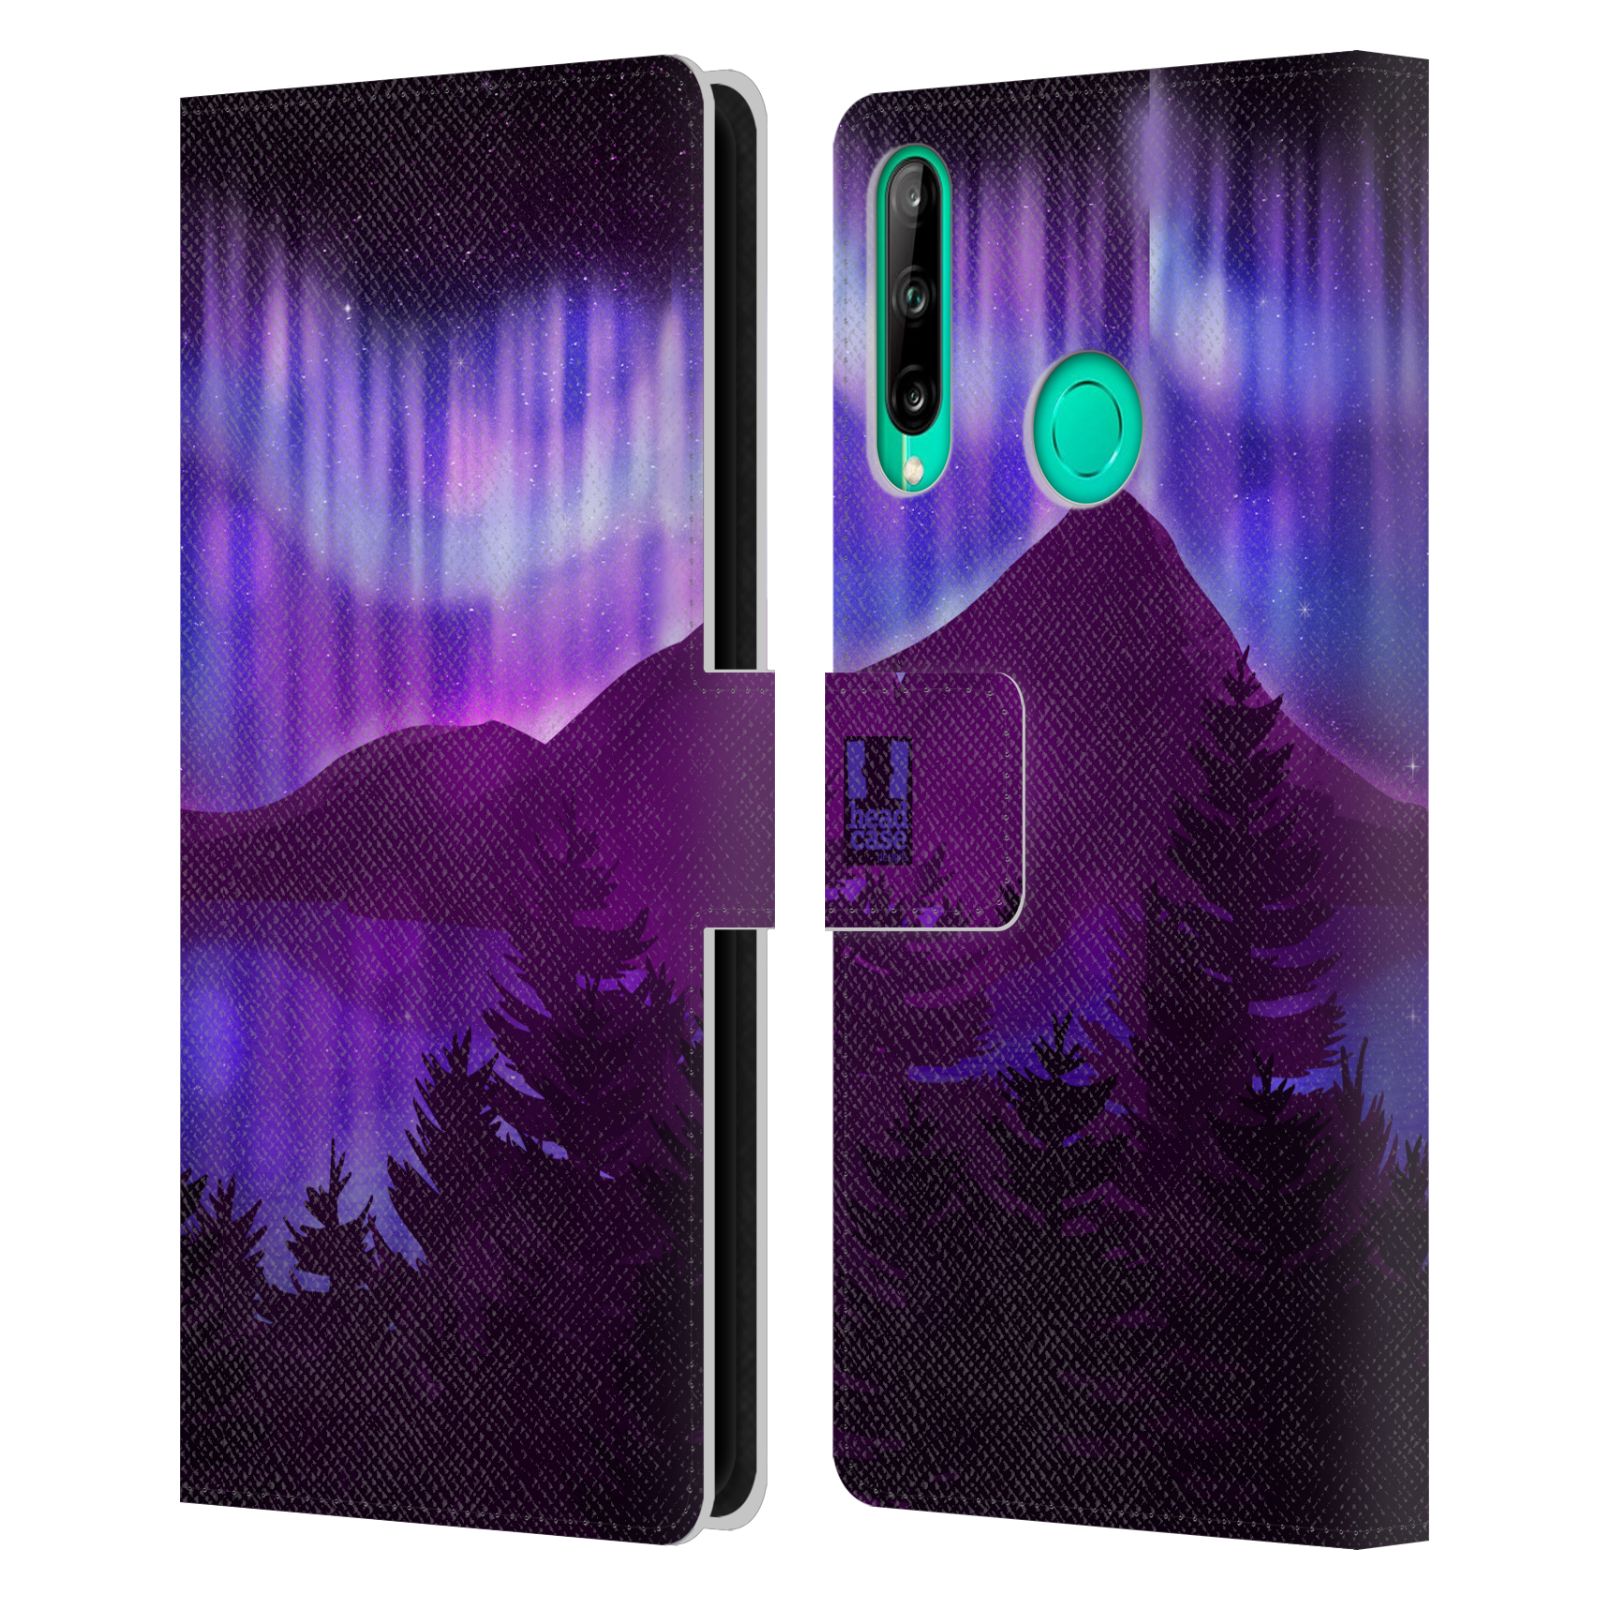 Pouzdro na mobil Huawei P40 LITE E - HEAD CASE - Hory a lesy fialový odstín